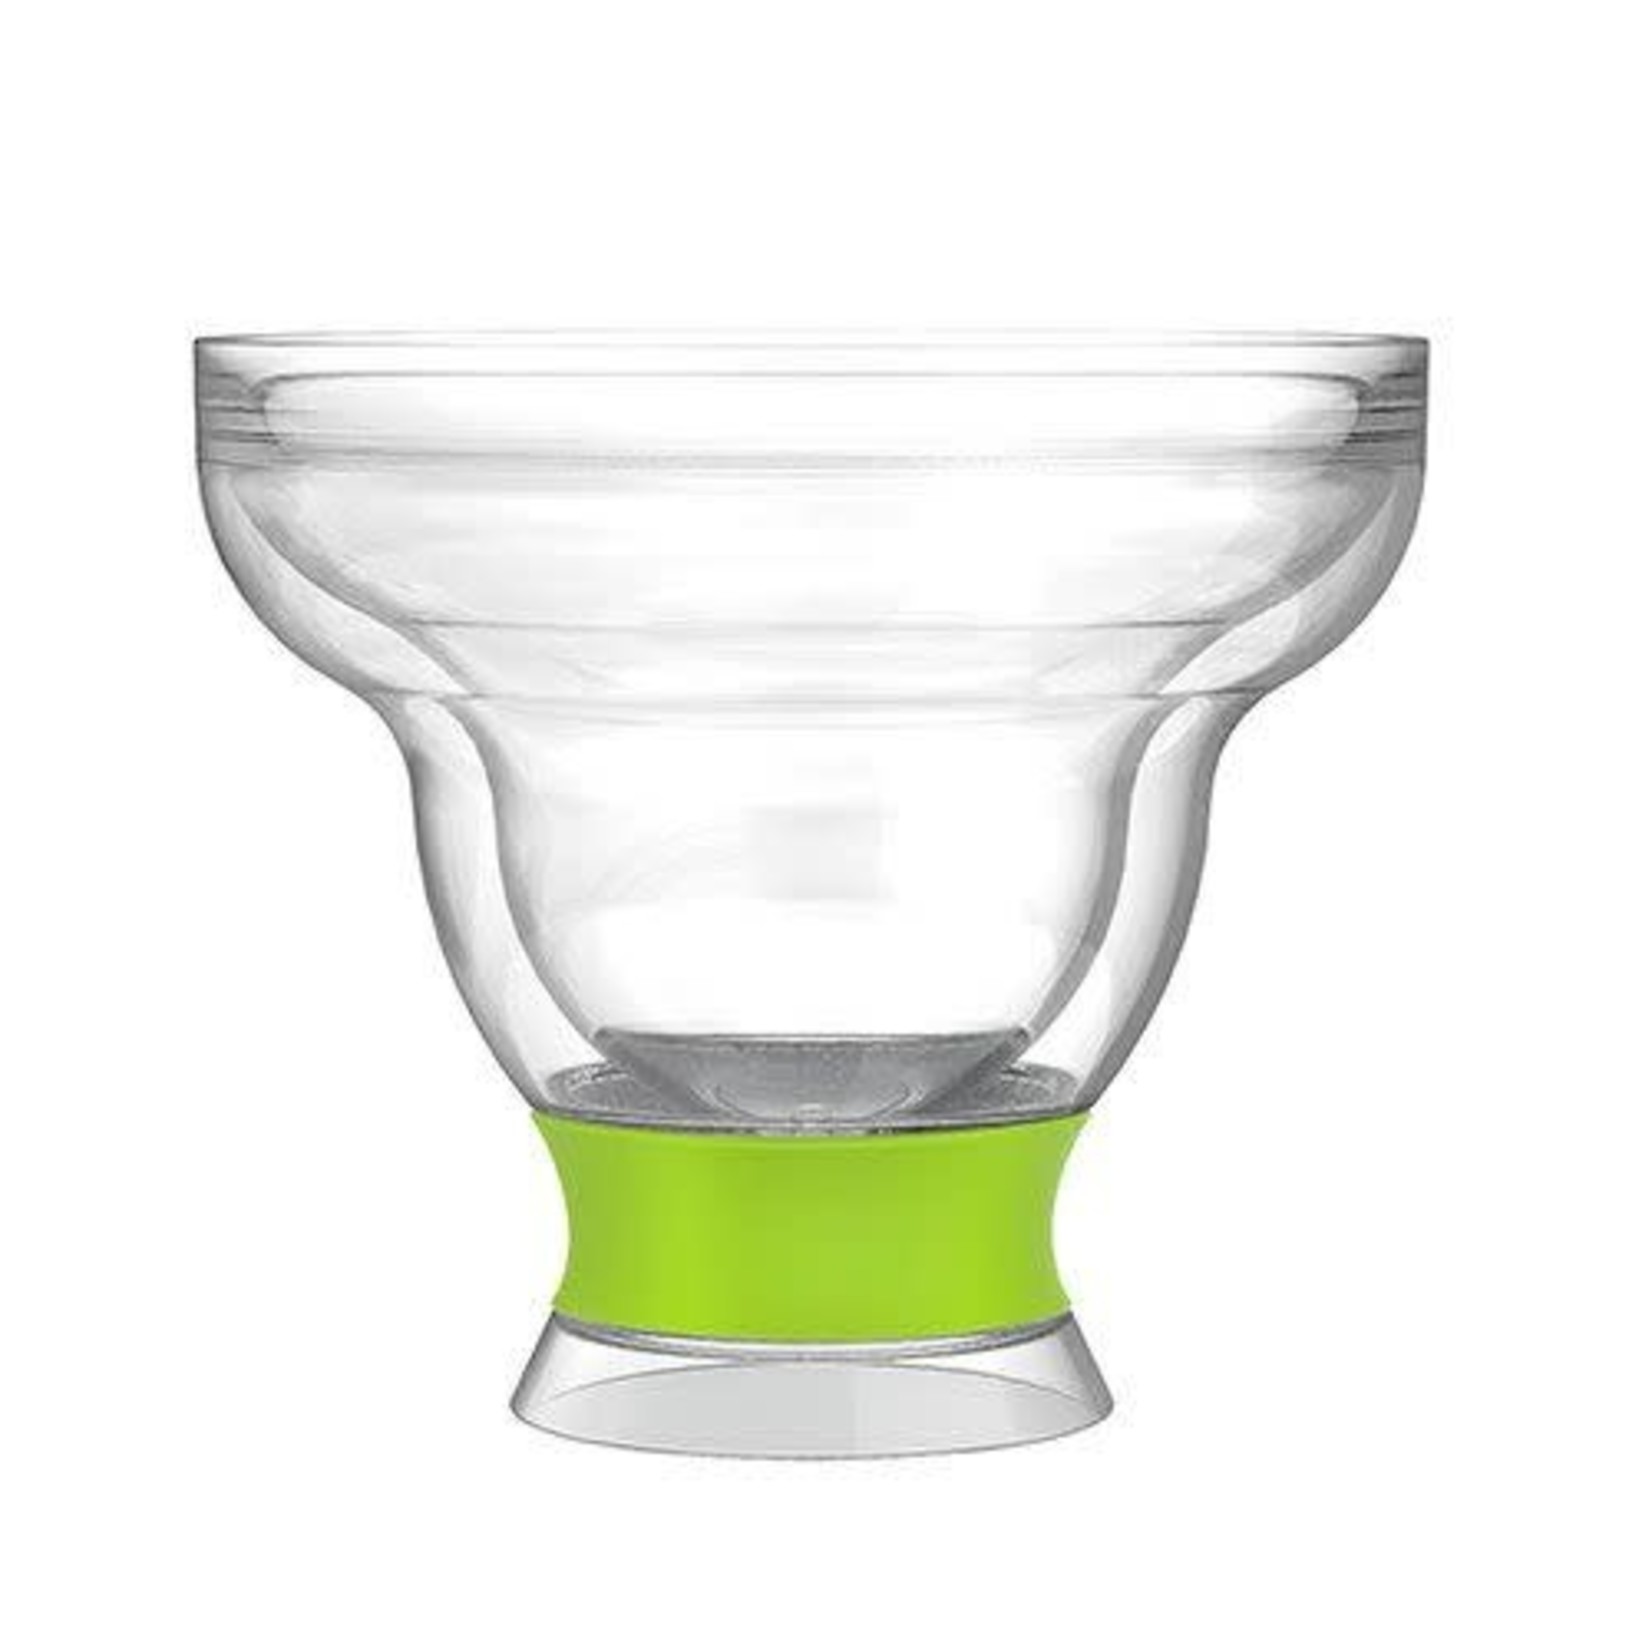 https://cdn.shoplightspeed.com/shops/651294/files/38502268/1652x1652x2/host-margarita-freeze-cooling-cup.jpg